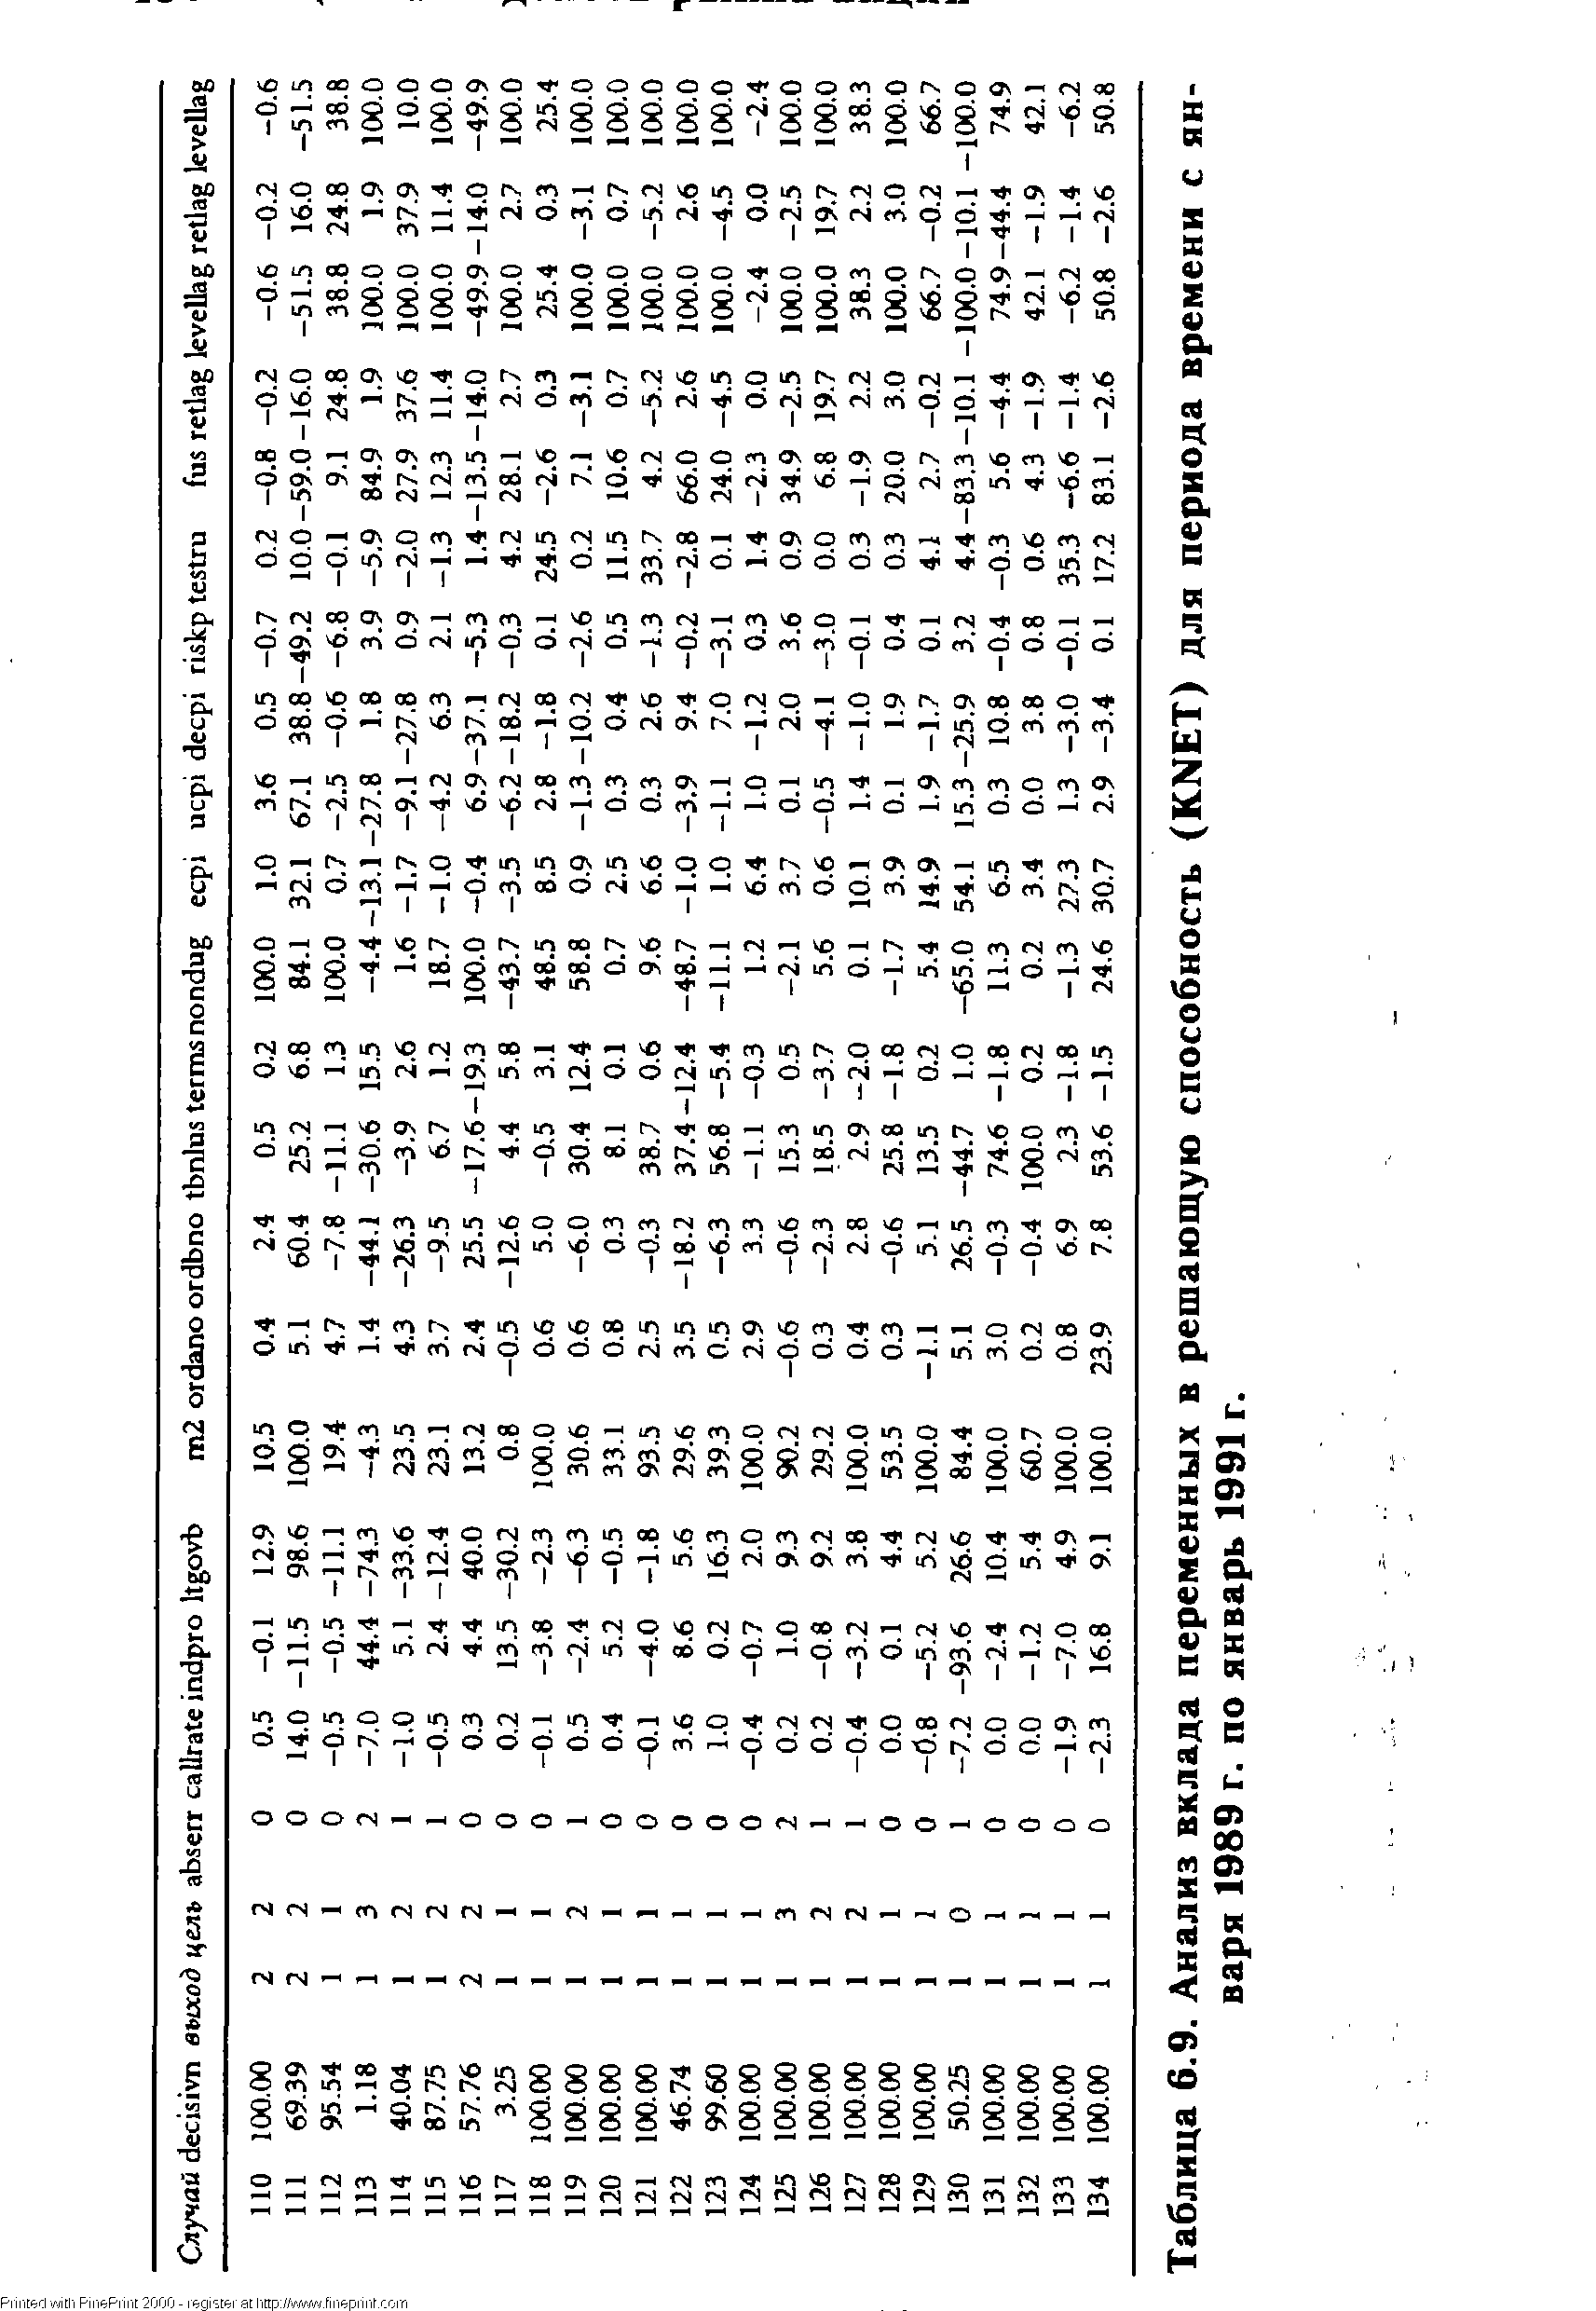 Таблица 6.9. Анализ вклада переменных в решающую способность (KNET) для периода времени с января 1989 г. по январь 1991 г.
